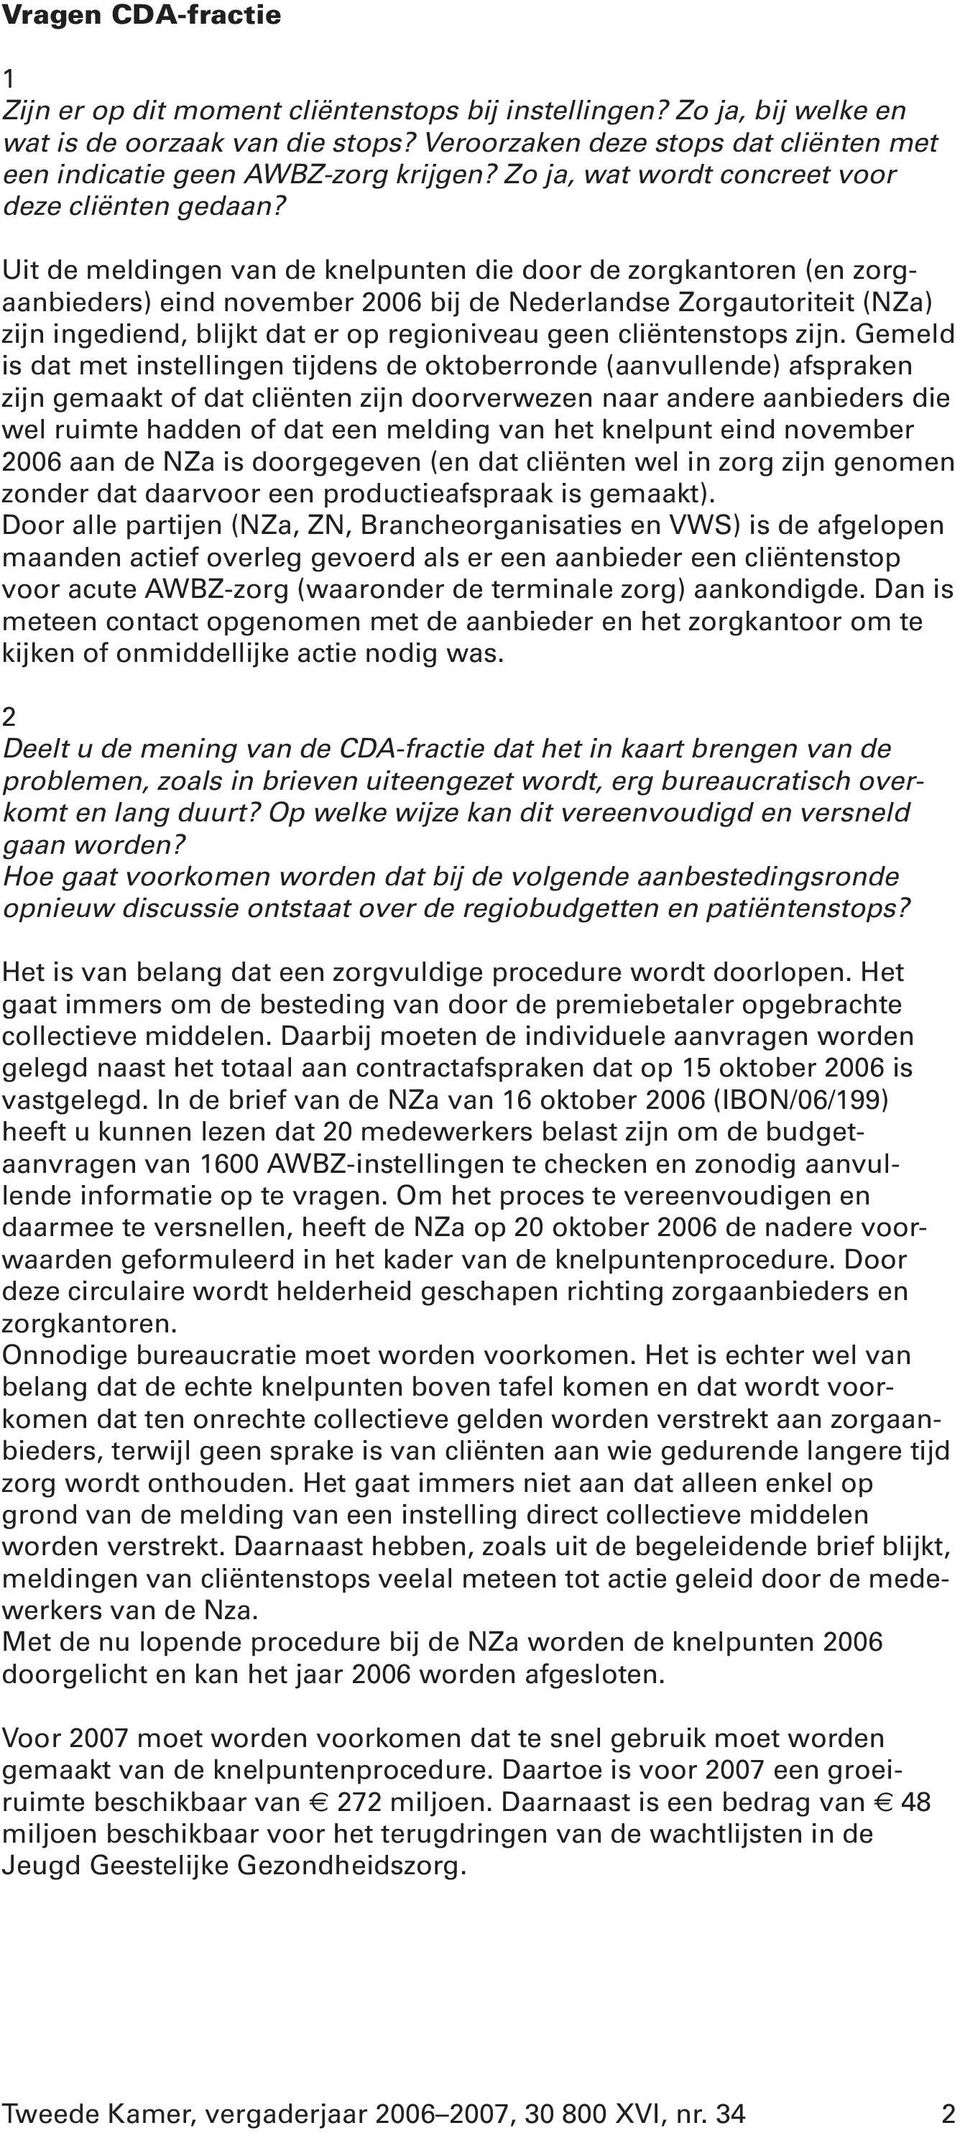 Uit de meldingen van de knelpunten die door de zorgkantoren (en zorgaanbieders) eind november 2006 bij de Nederlandse Zorgautoriteit (NZa) zijn ingediend, blijkt dat er op regioniveau geen